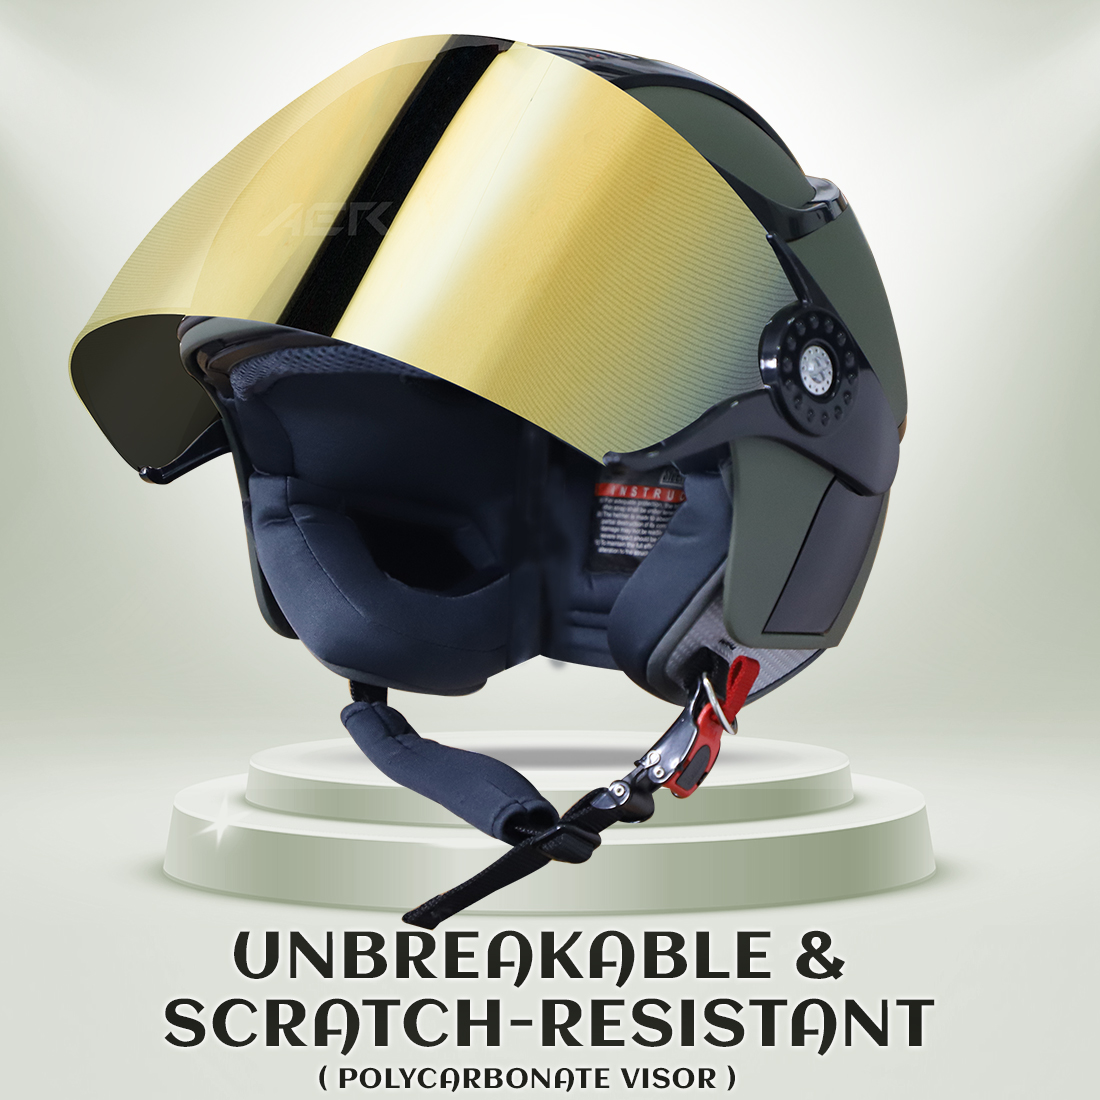 Steelbird SB-29 AER ISI Certified Open Face Helmet For Men And Women (Matt Battle Green Black With Chrome Gold Visor)